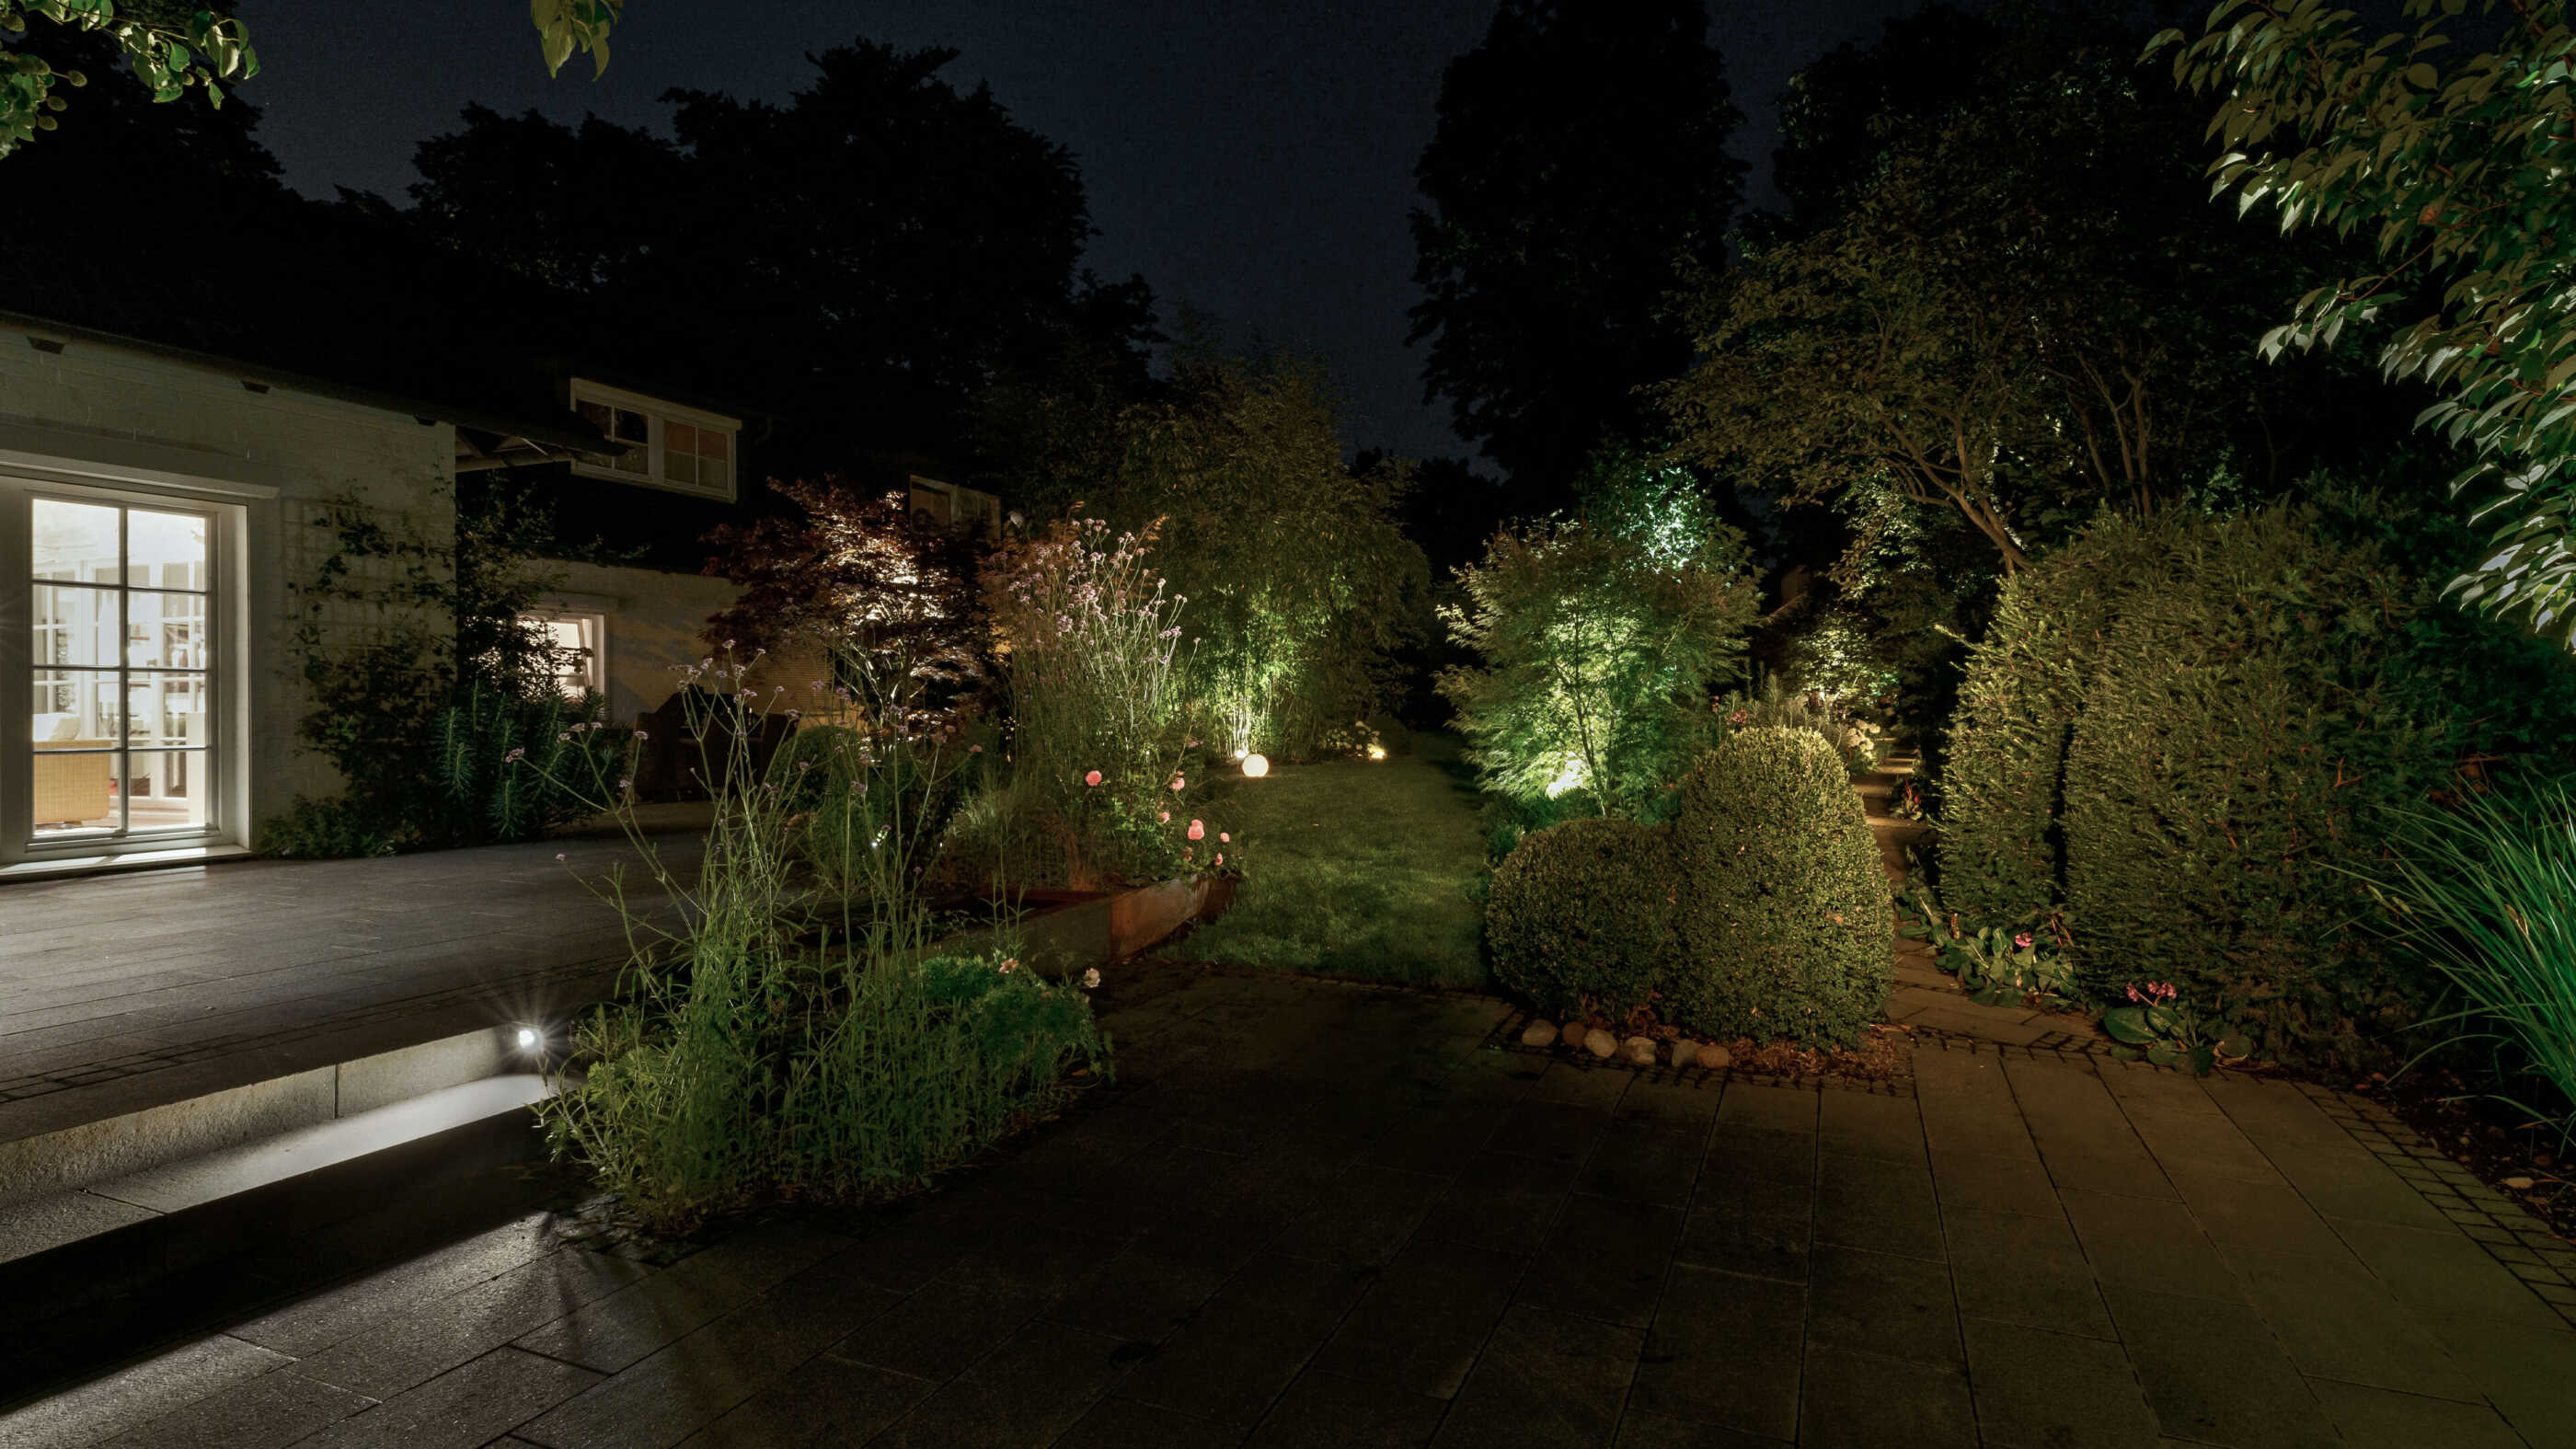 Blick in einen Garten: Links ist eine Terrasse zu sehen, auf der rechten Seite schlängelt sich ein gepflasterter Weg durch die Botanik. (Foto: Prediger Lichtberater)